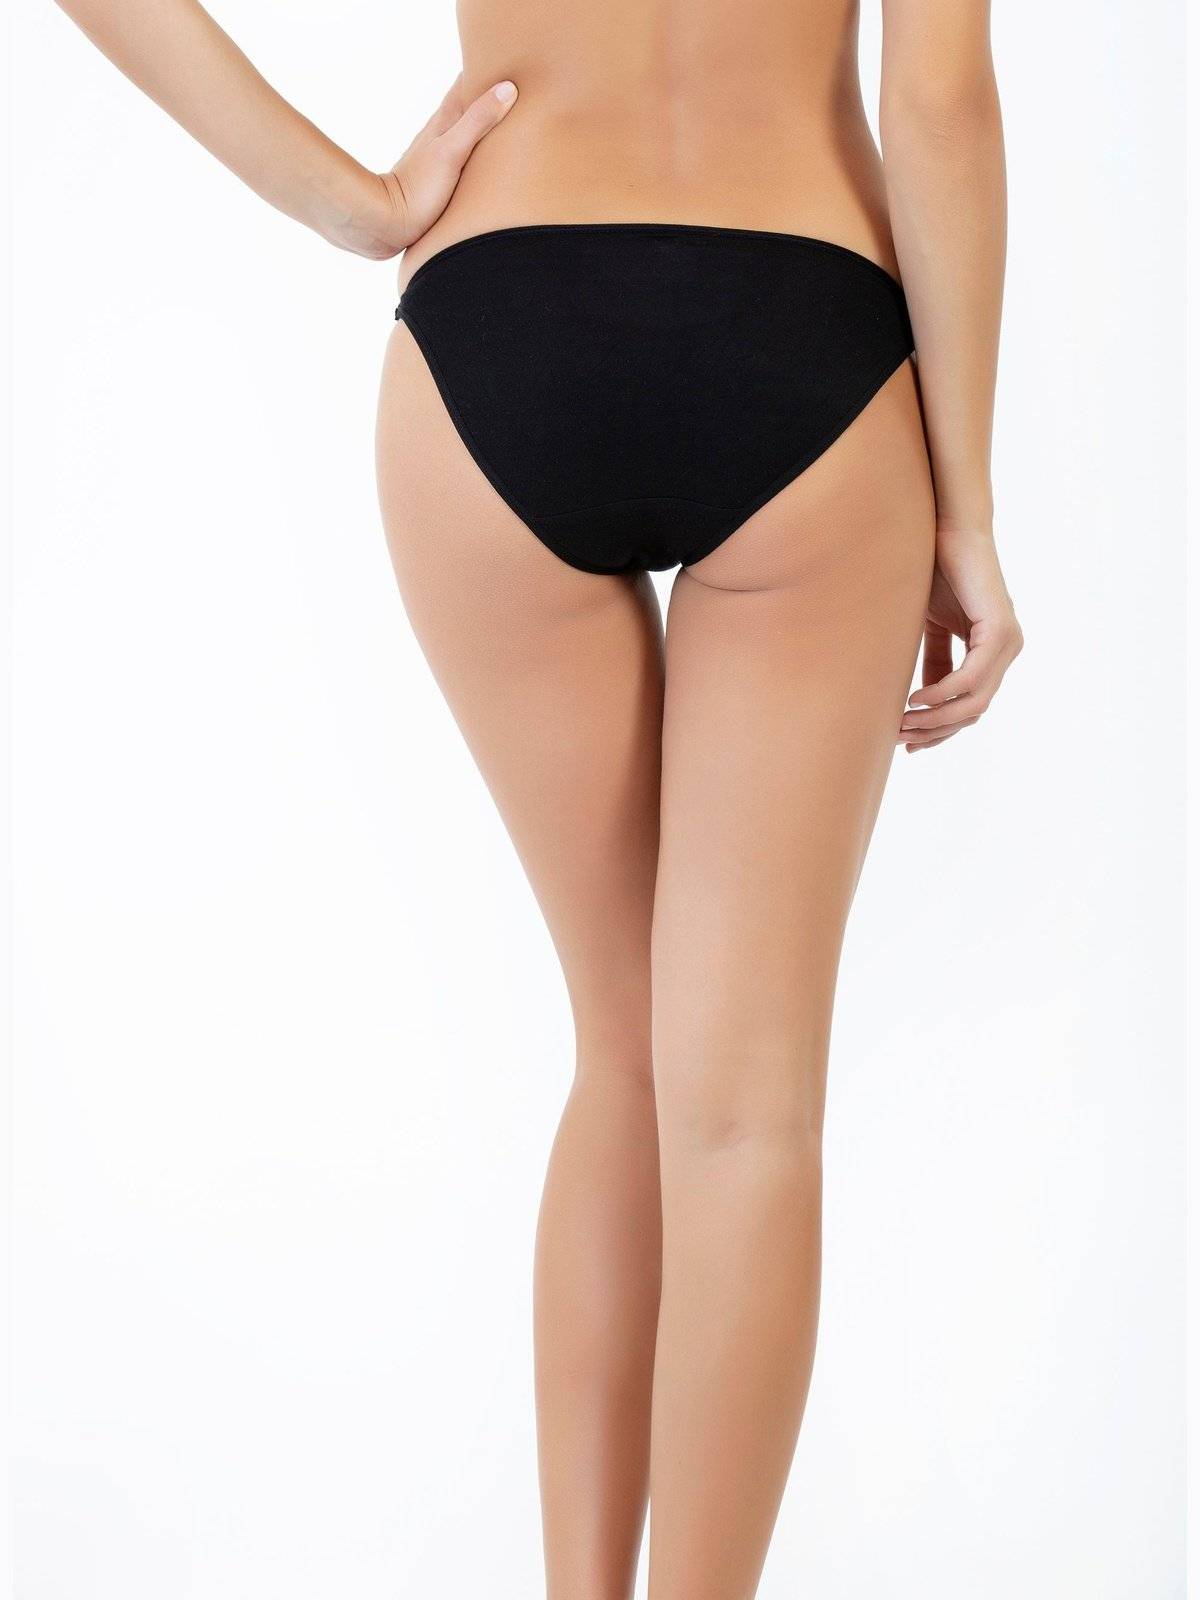 Zainafacai Women's Lace Underwear Bikini Low Rise Thongs India